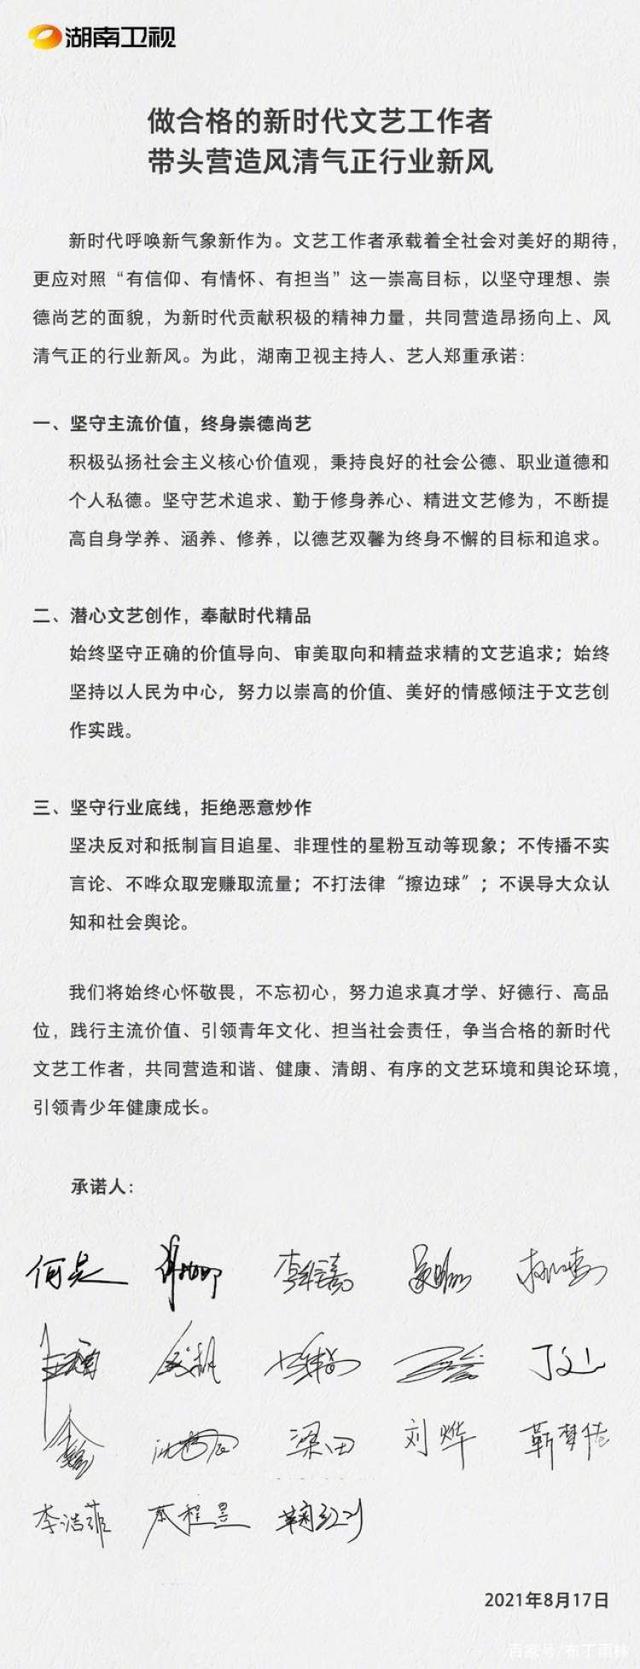 钱枫被曝2019年性侵 湖南卫视:暂停钱枫一切工作